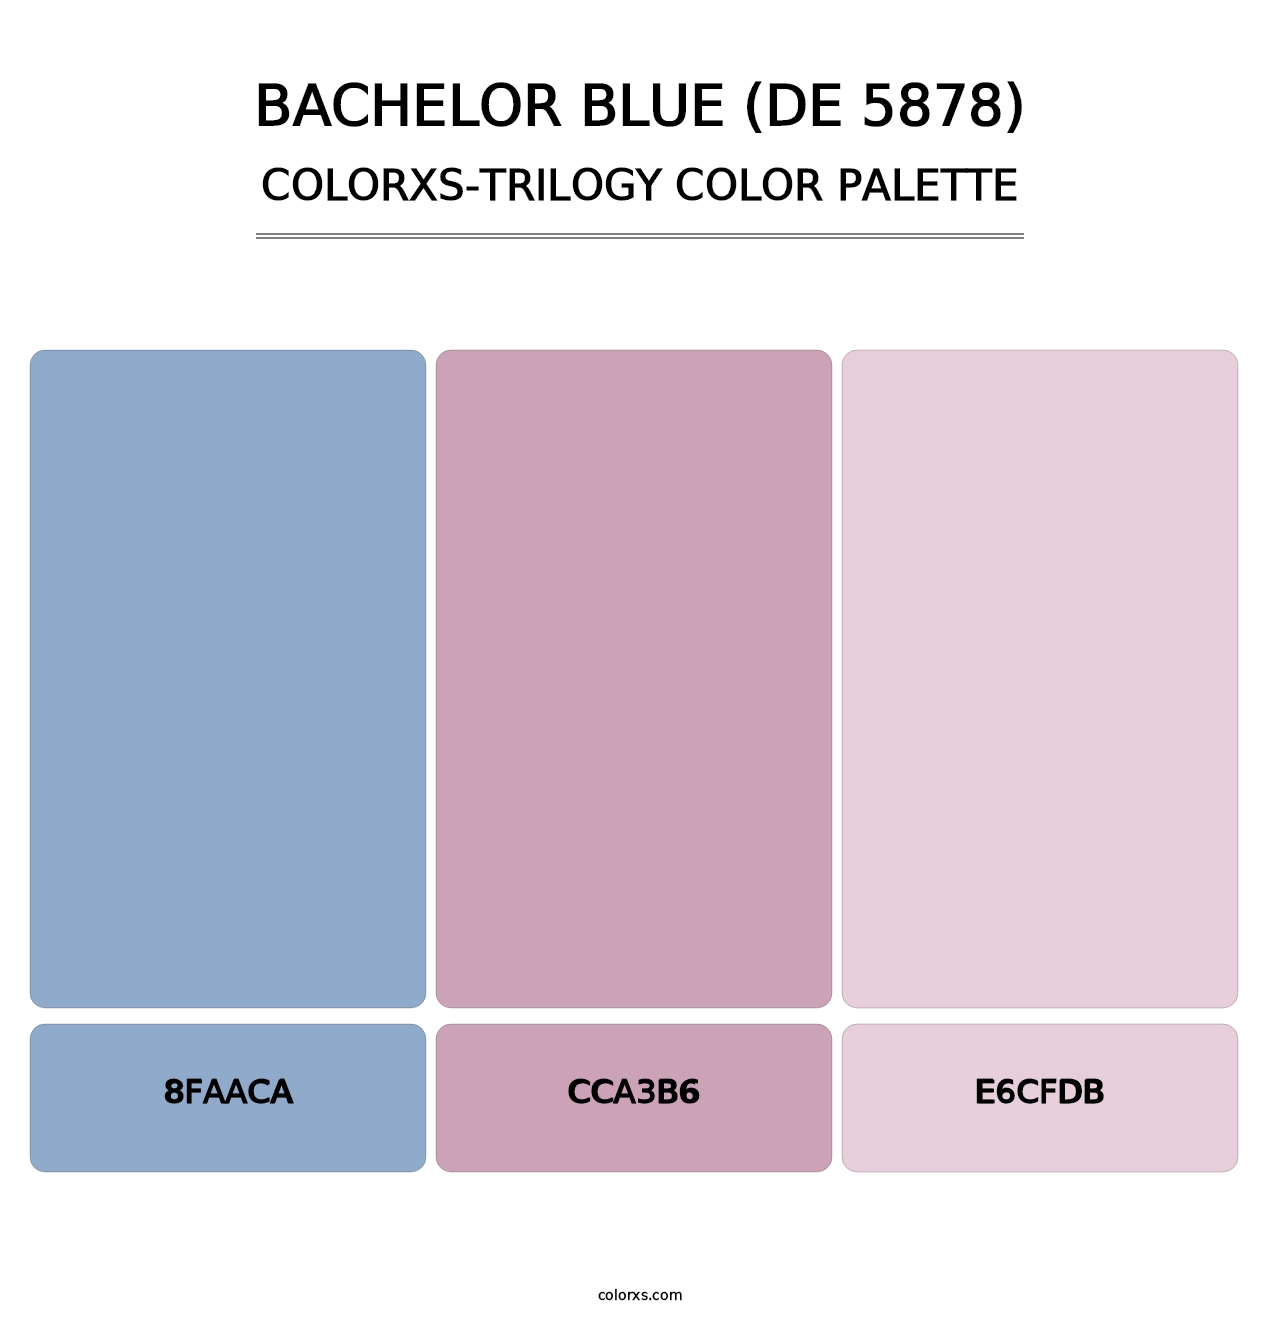 Bachelor Blue (DE 5878) - Colorxs Trilogy Palette